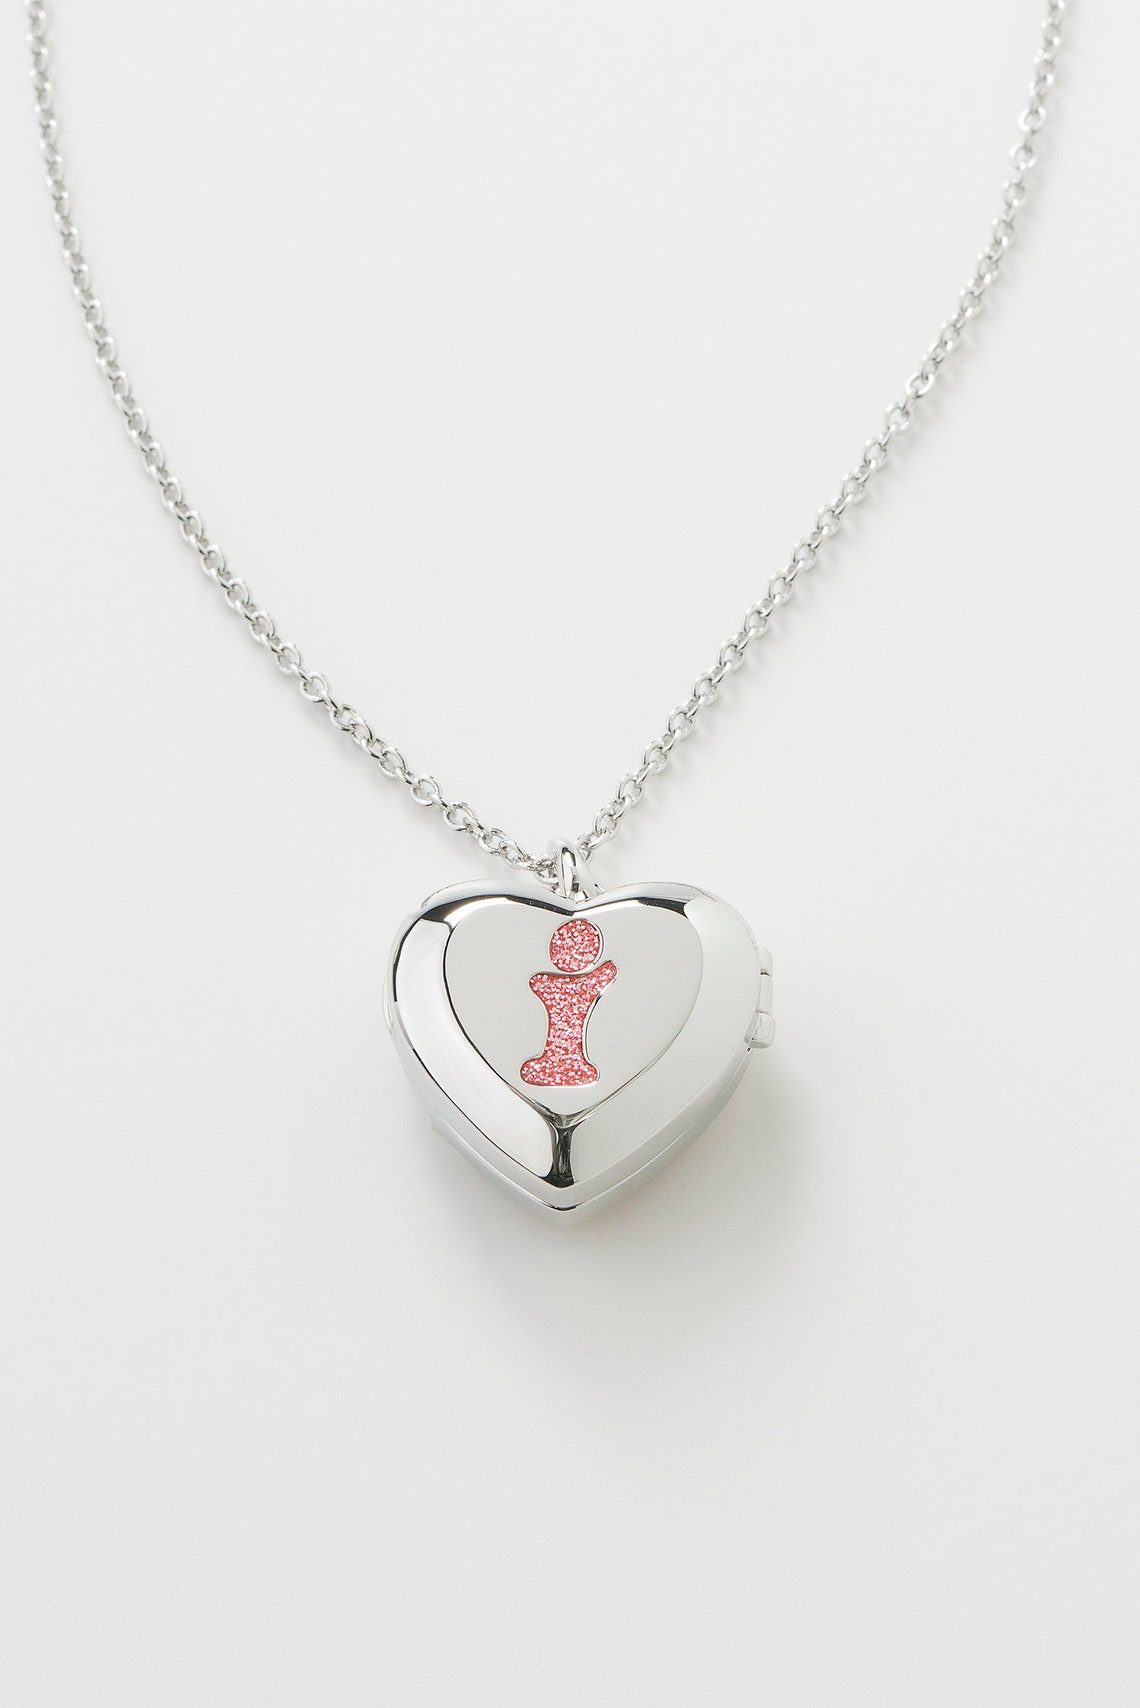 Pink Unicorn Necklace for Little Girl Little Girl Locket | Etsy